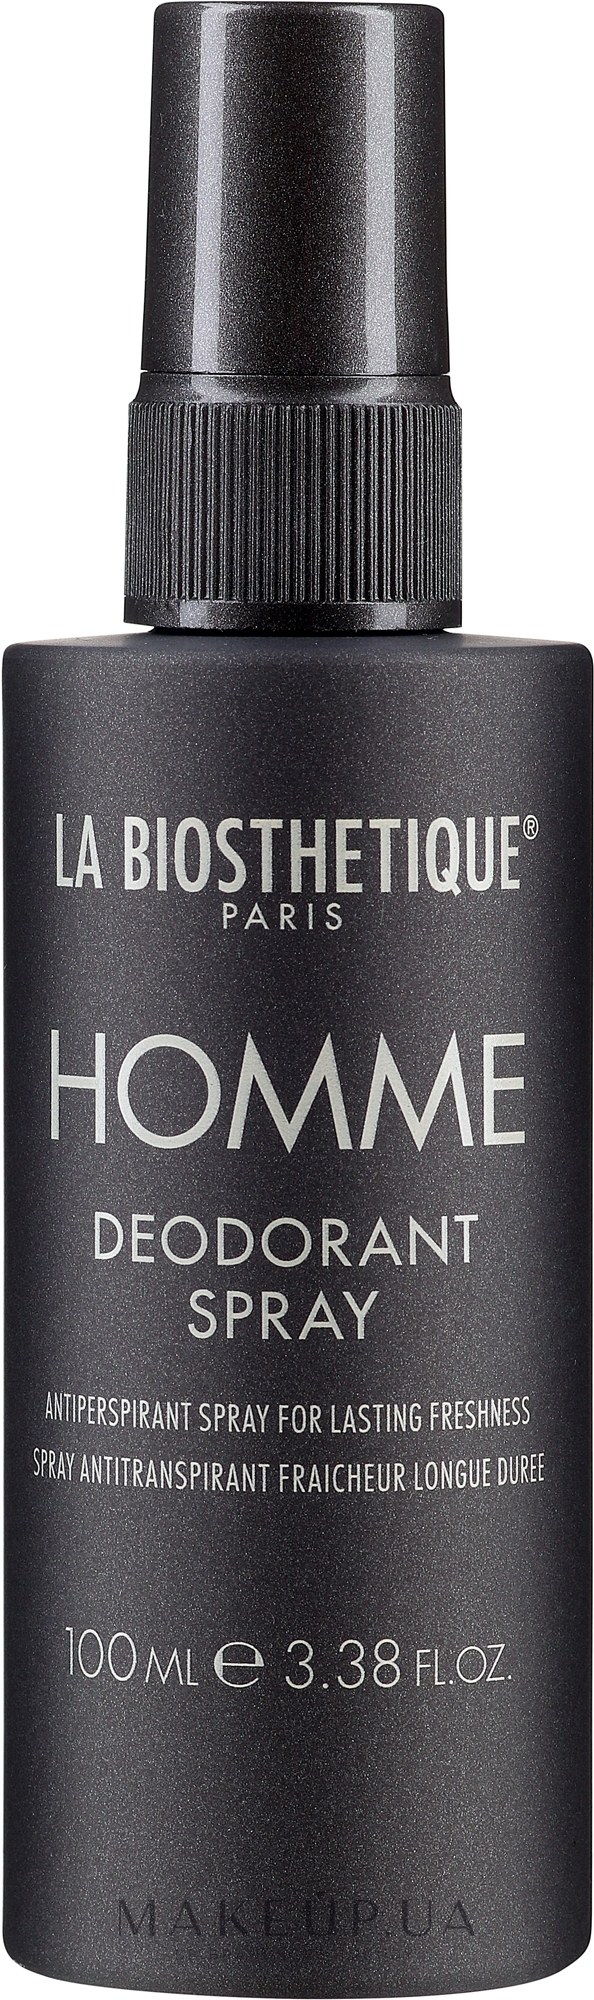 Освіжальний дезодорант-спрей тривалої дії - La Biosthetique Homme Deodorant Spray — фото 100ml